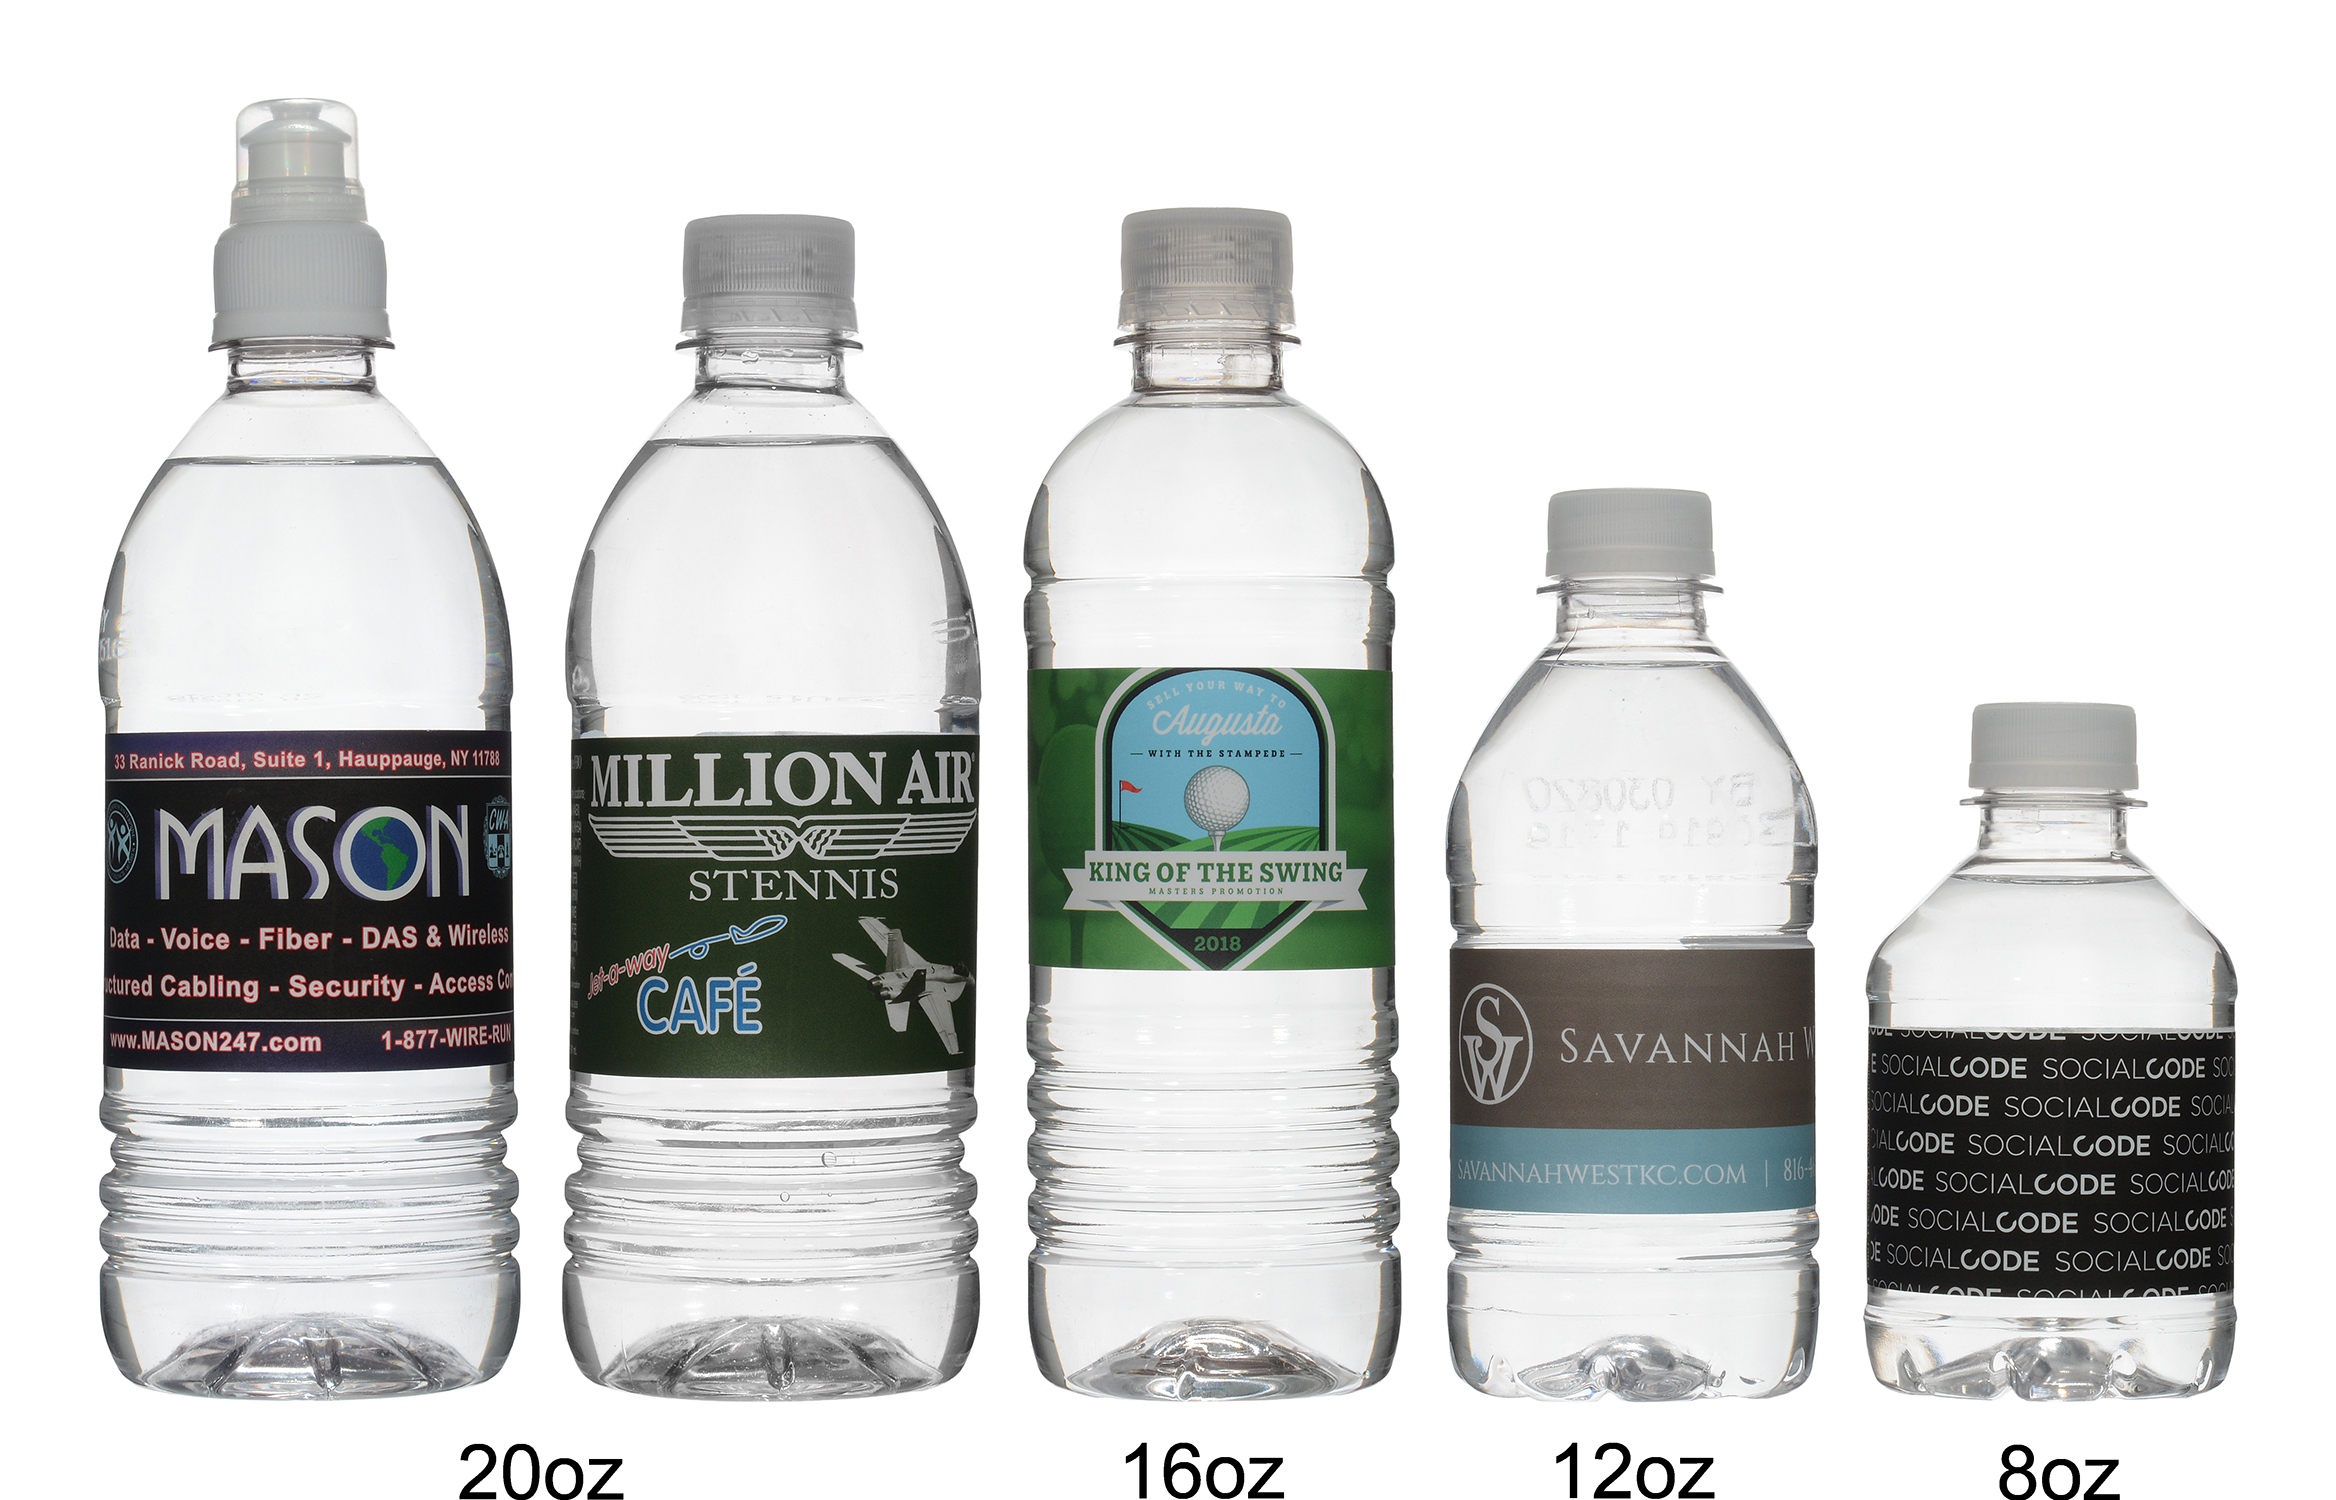 Custom Printed Promotional Plastic Water Bottles